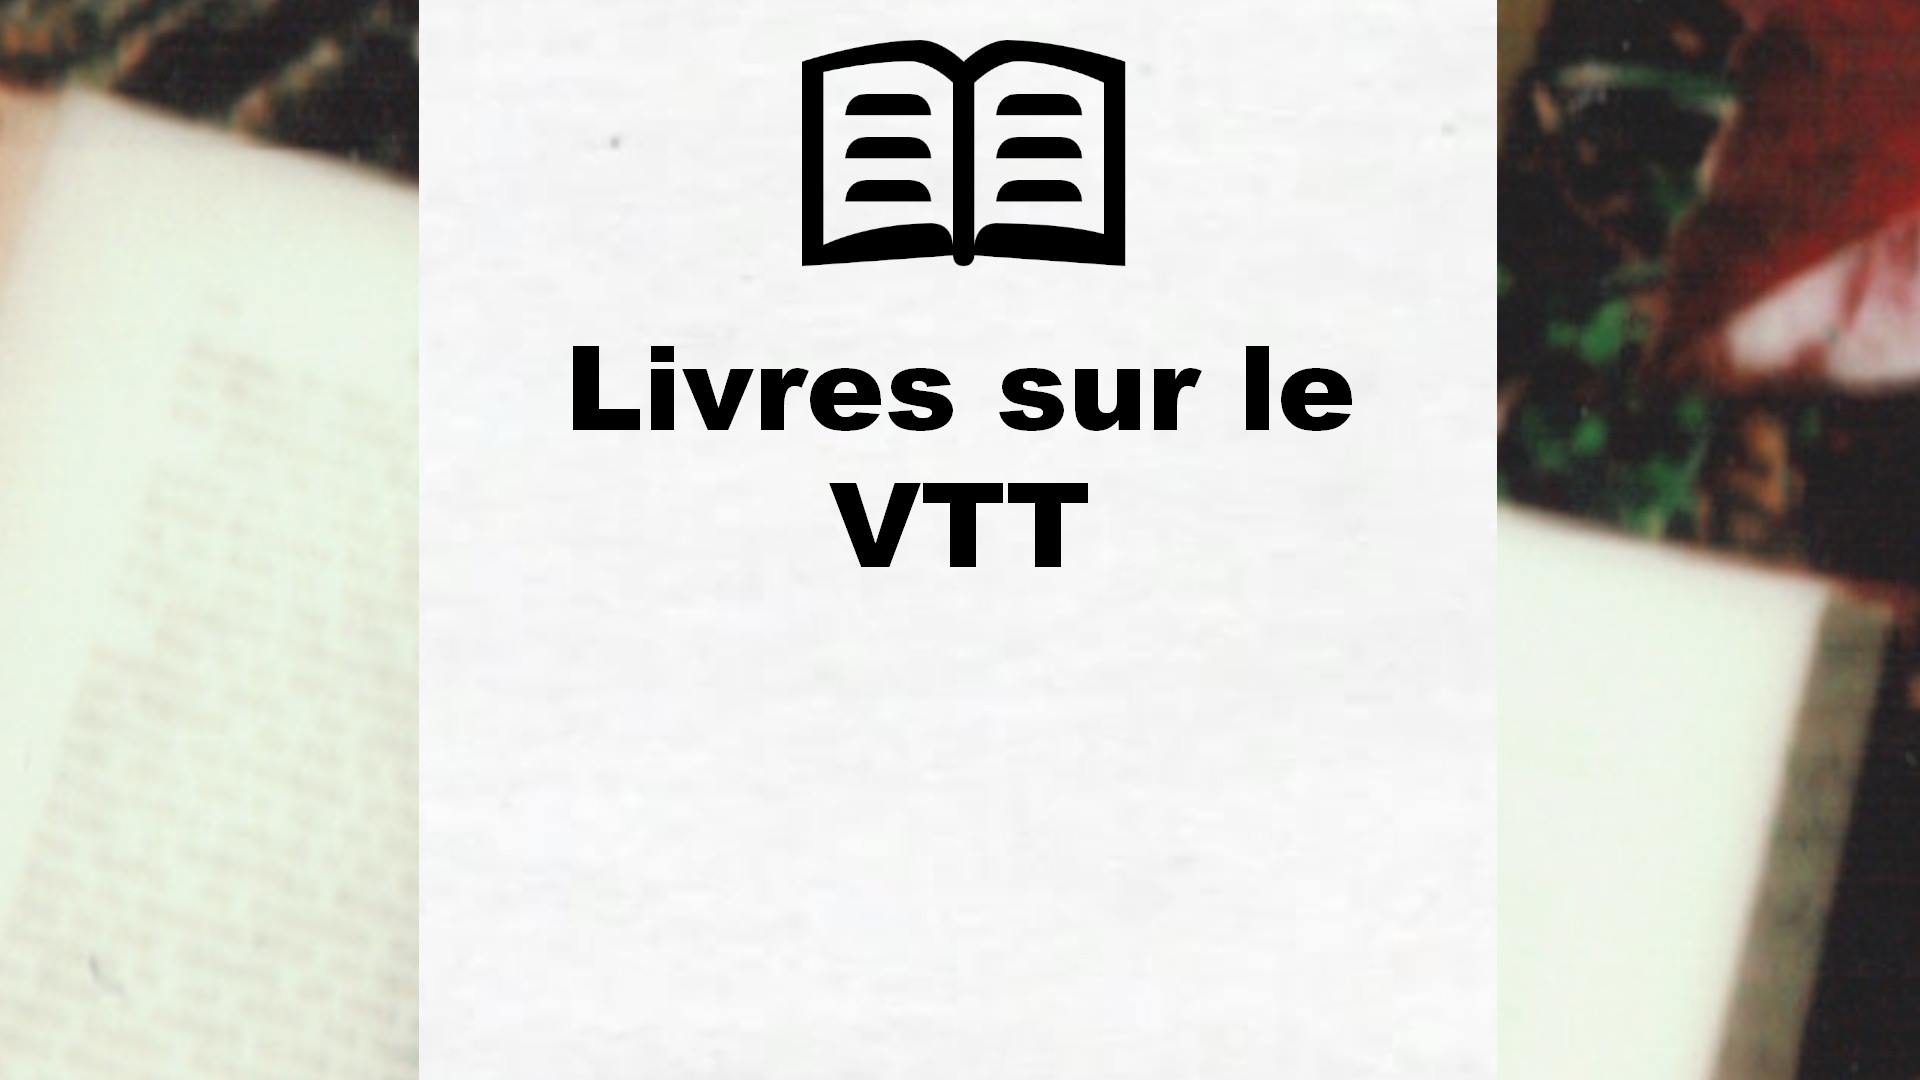 Livres sur le VTT